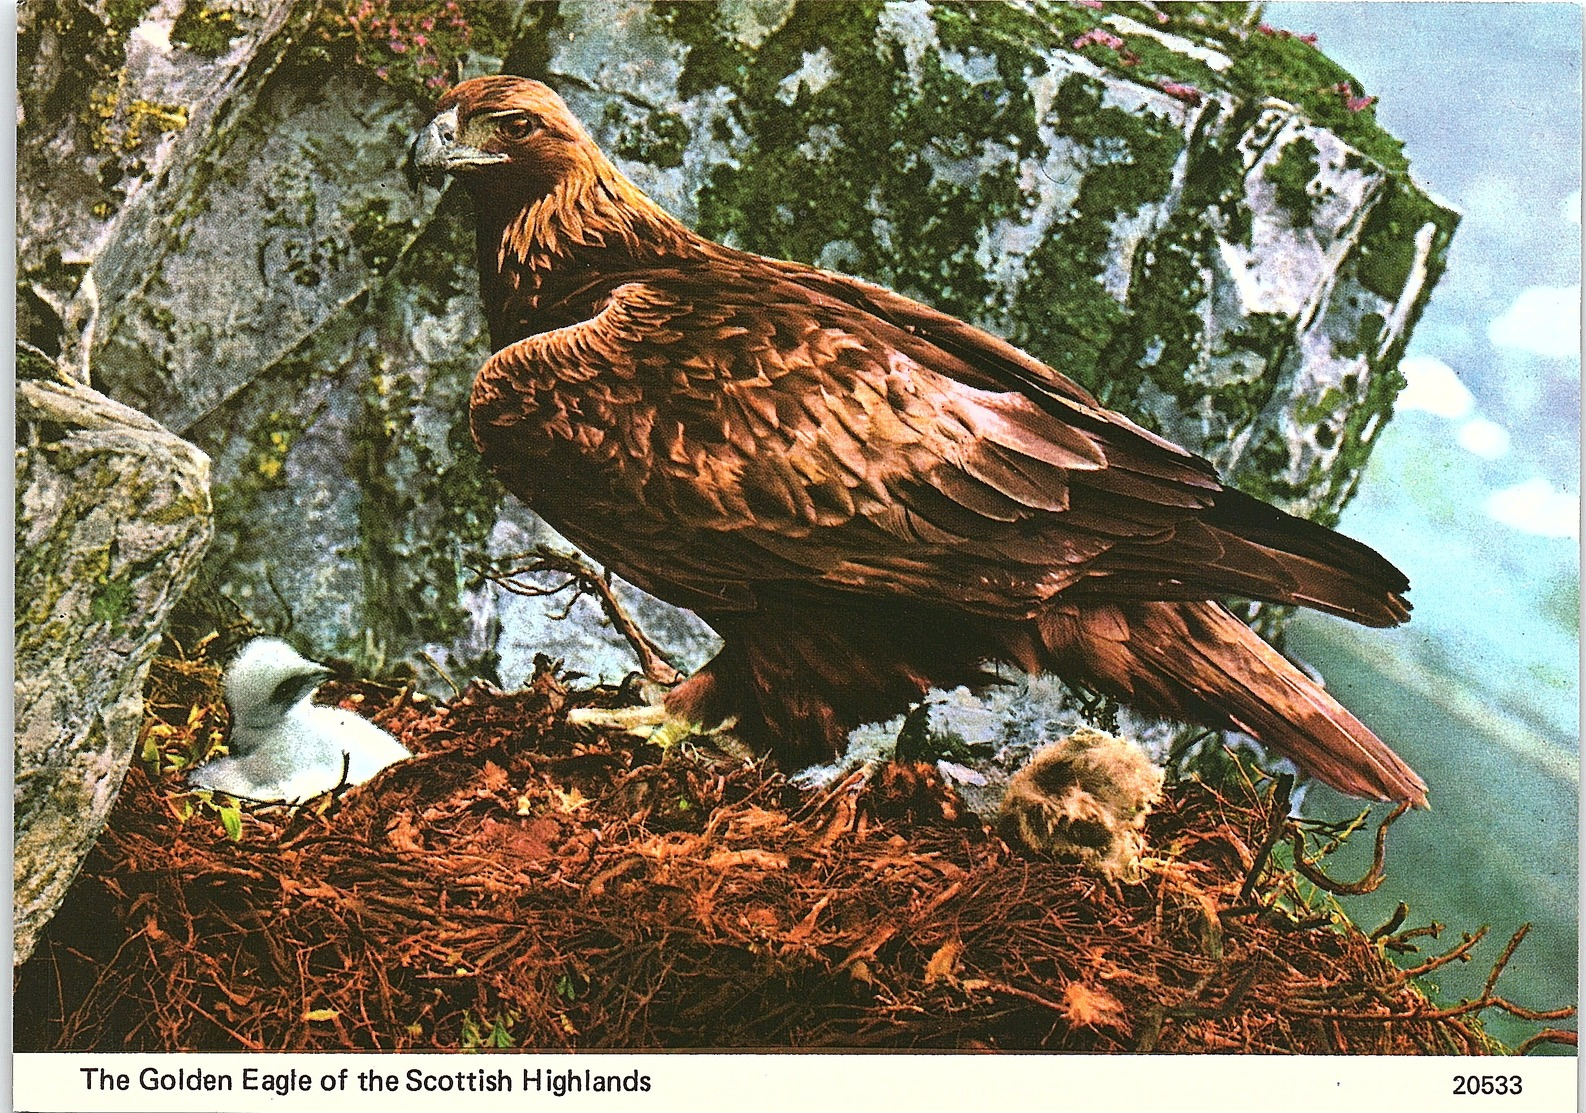 Animals - Birds, The Golden Eagle Of The Scottish Highlands - Vögel